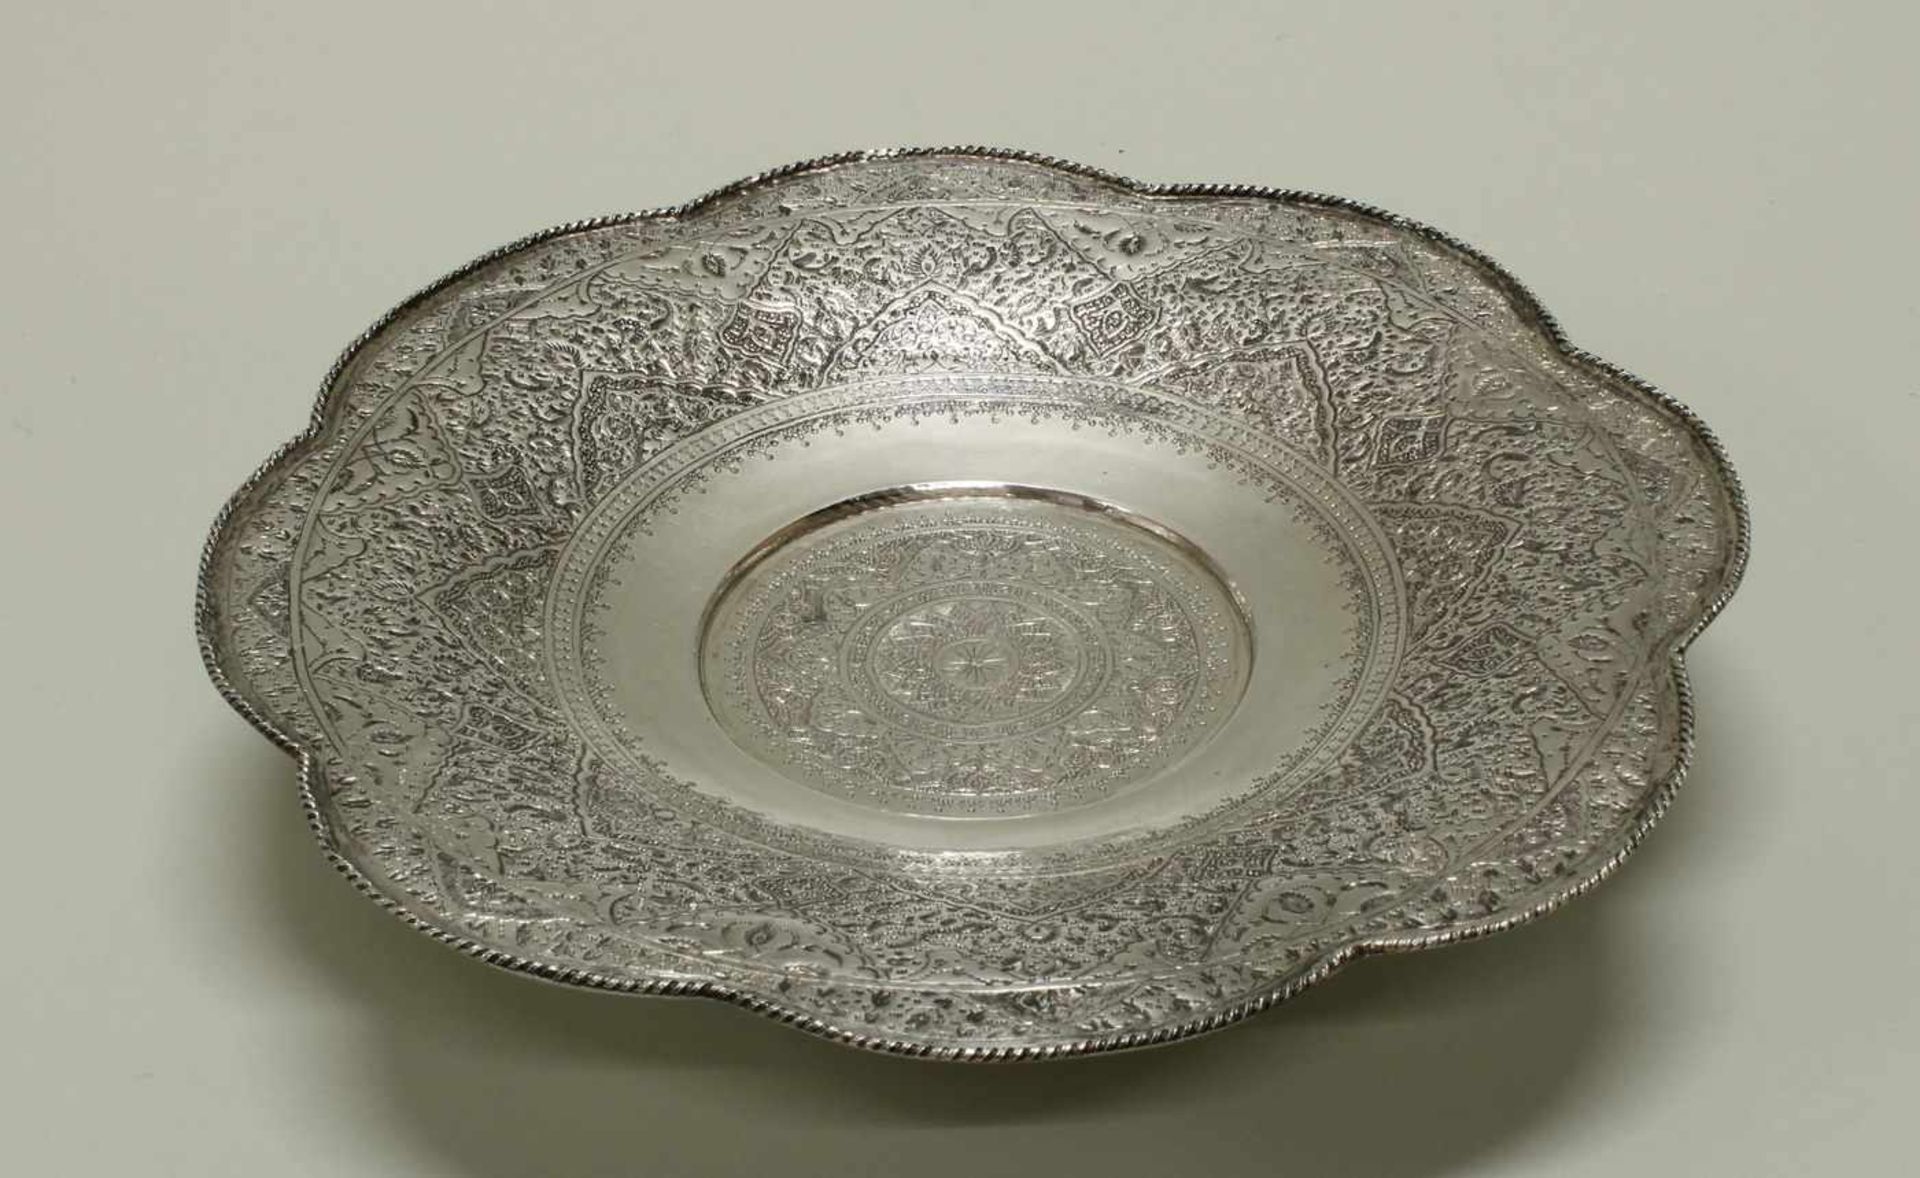 Tafelaufsatz, Silber 84, wohl Orient, Ornamentdekor, 6 cm hoch, ø 29 cm, ca. 590 g